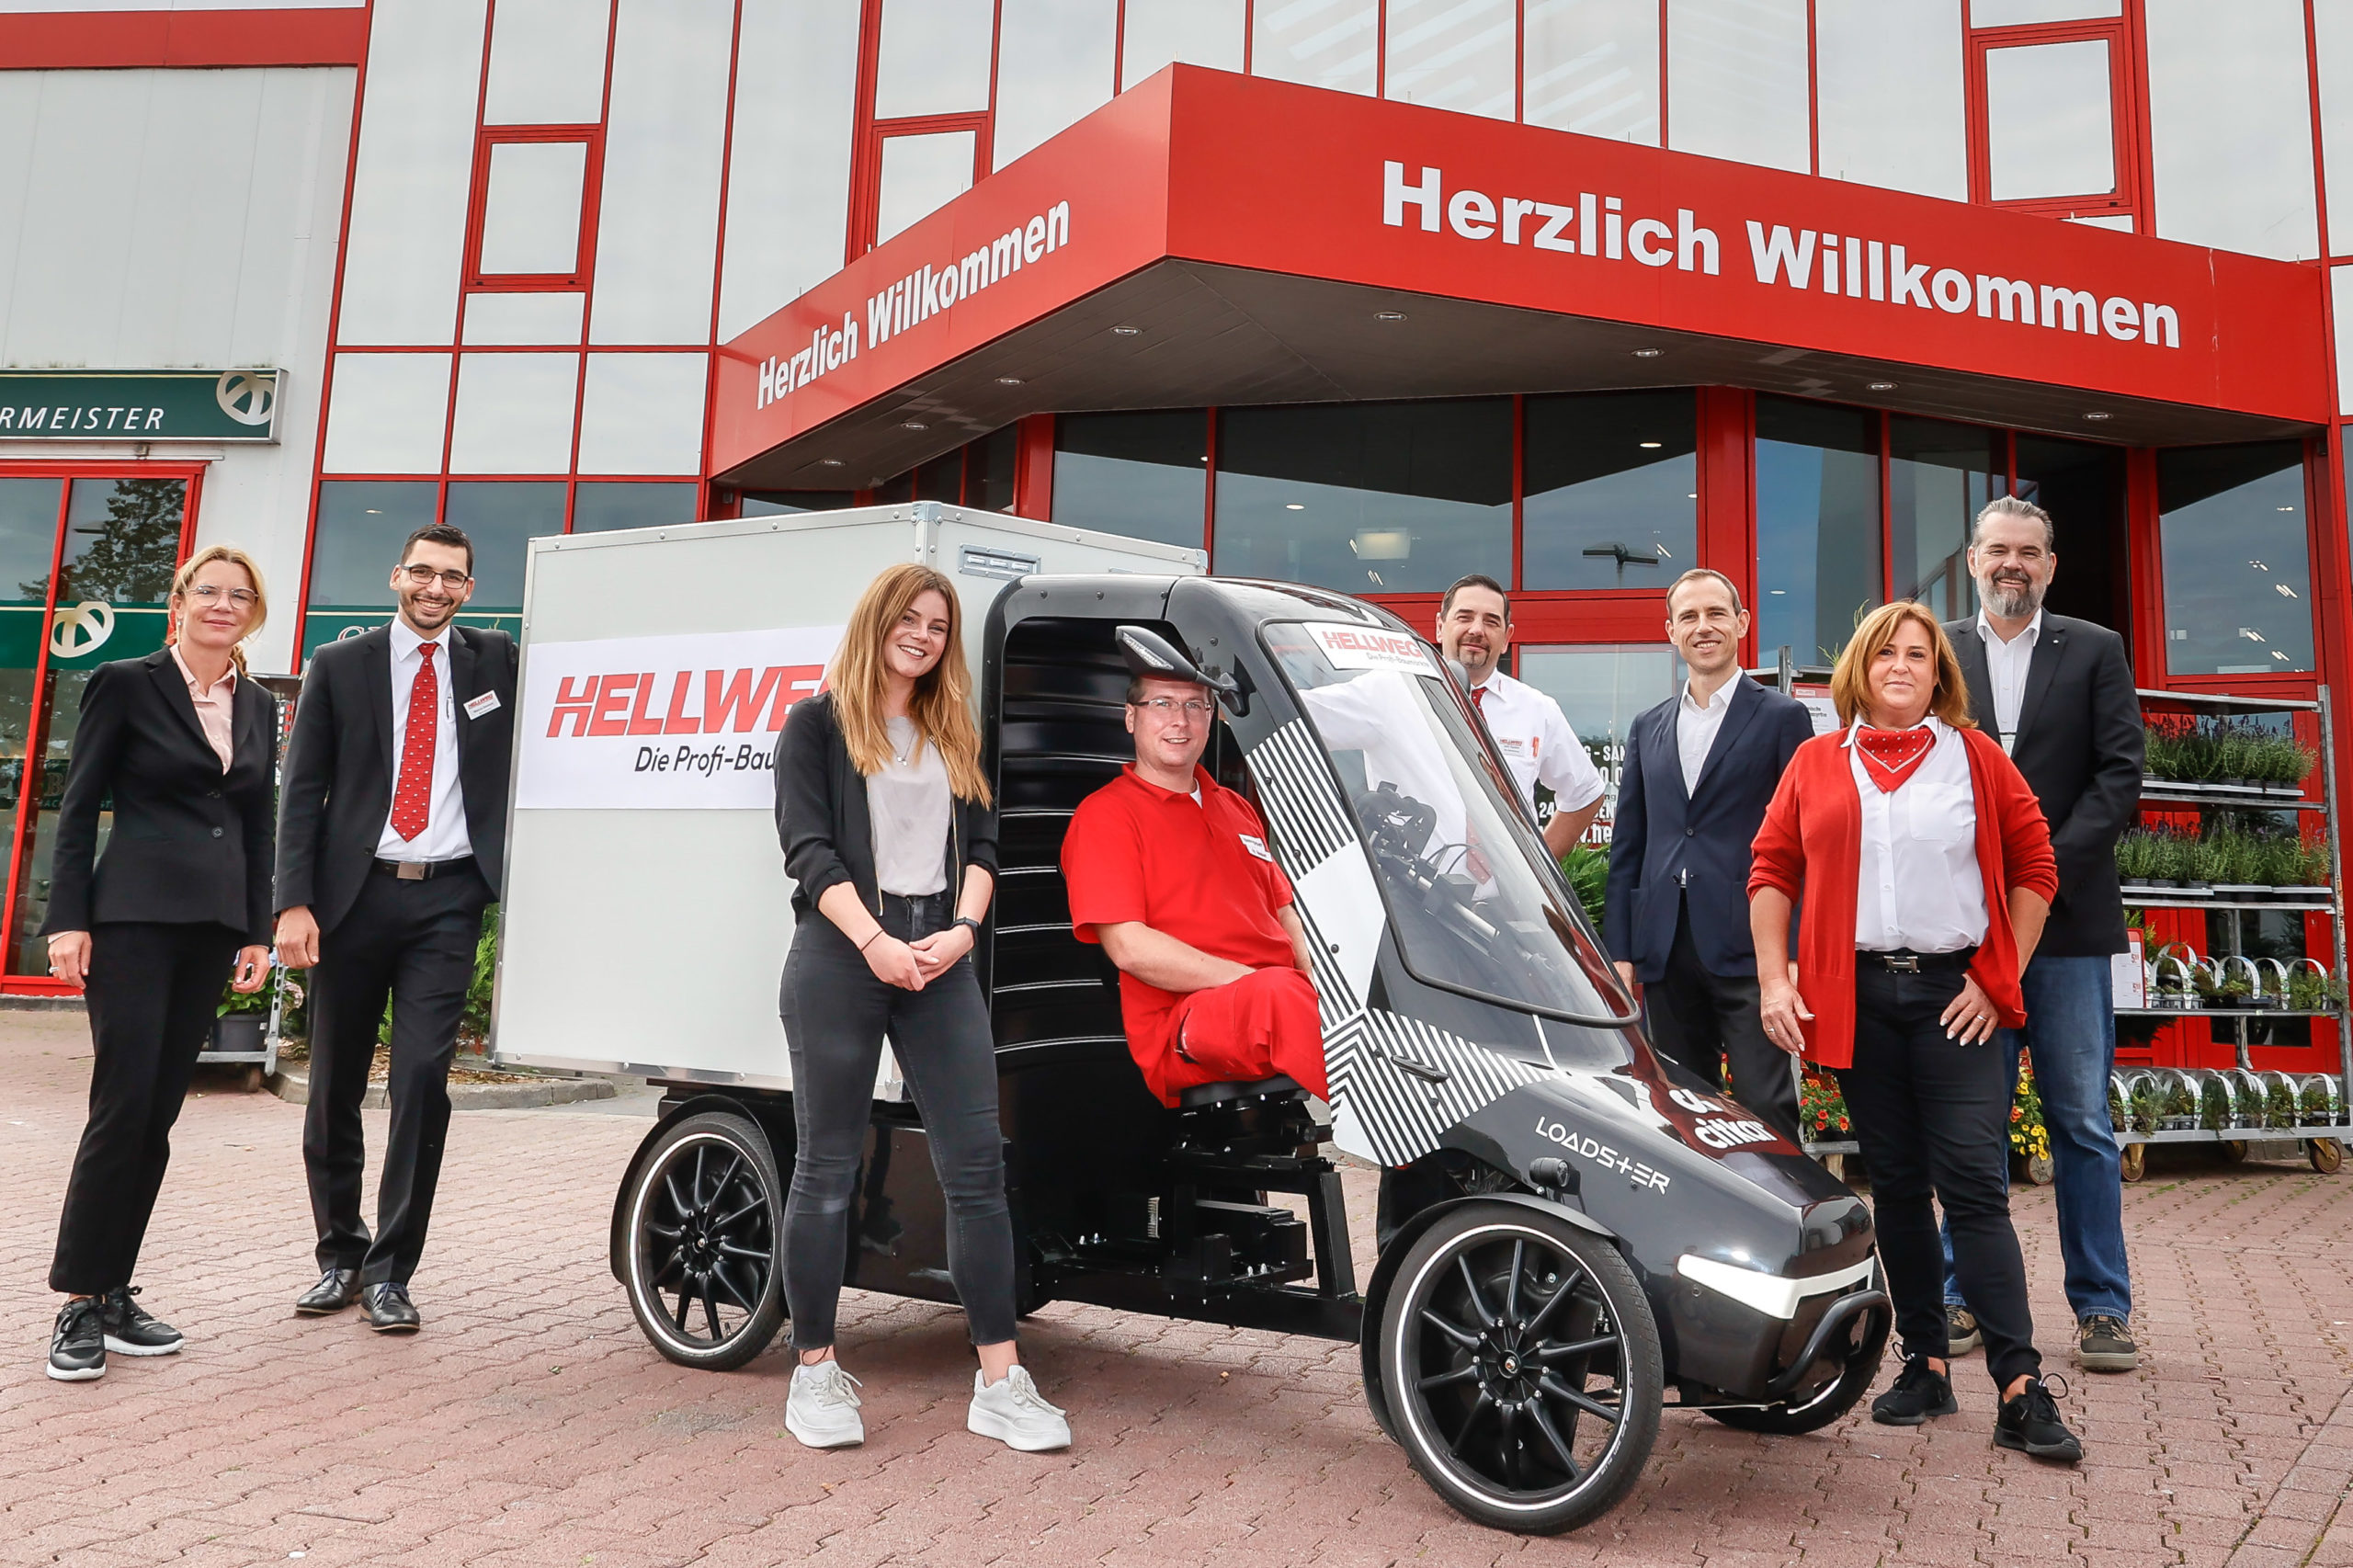 Förderung für Lastenräder in Dortmund – Betriebe bekommen Unterstützung